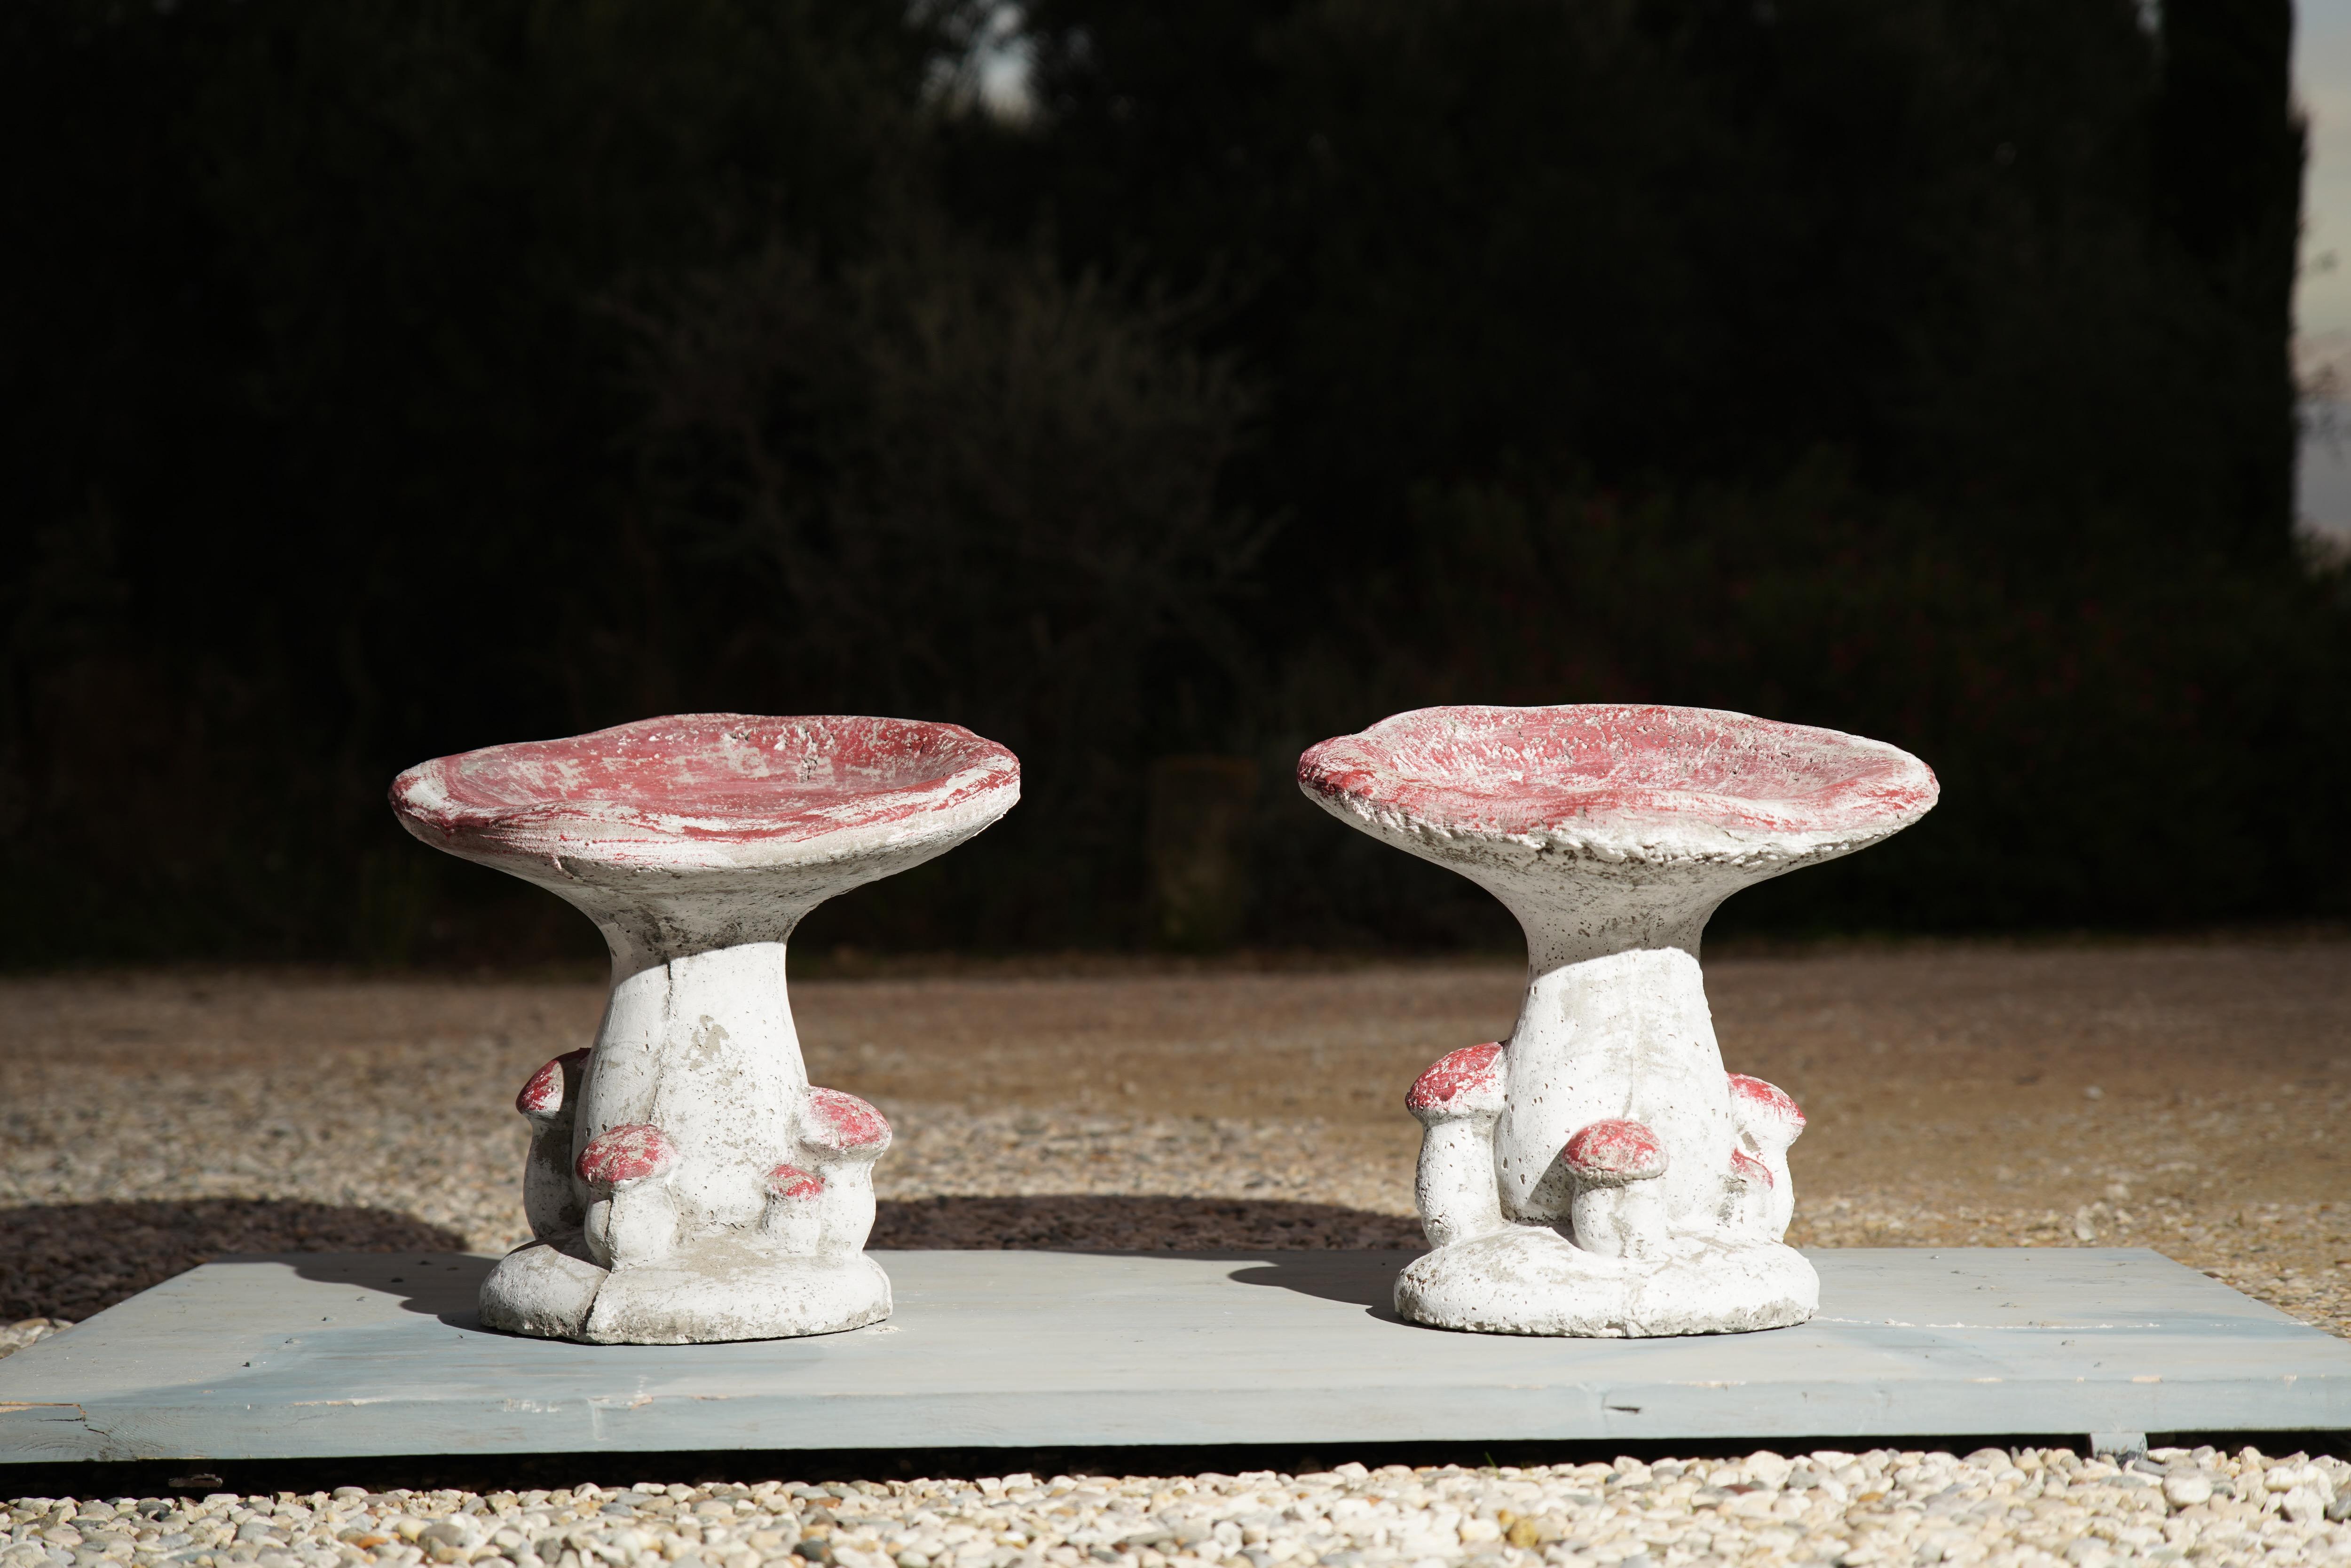 Merveilleux tabourets champignons en béton des années 1950 provenant du sud-ouest de la France. Chaque tabouret est fabriqué en béton et est exceptionnellement robuste et lourd (environ 20 kg chacun). 

Chaque tabouret est équipé d'un trou continu,